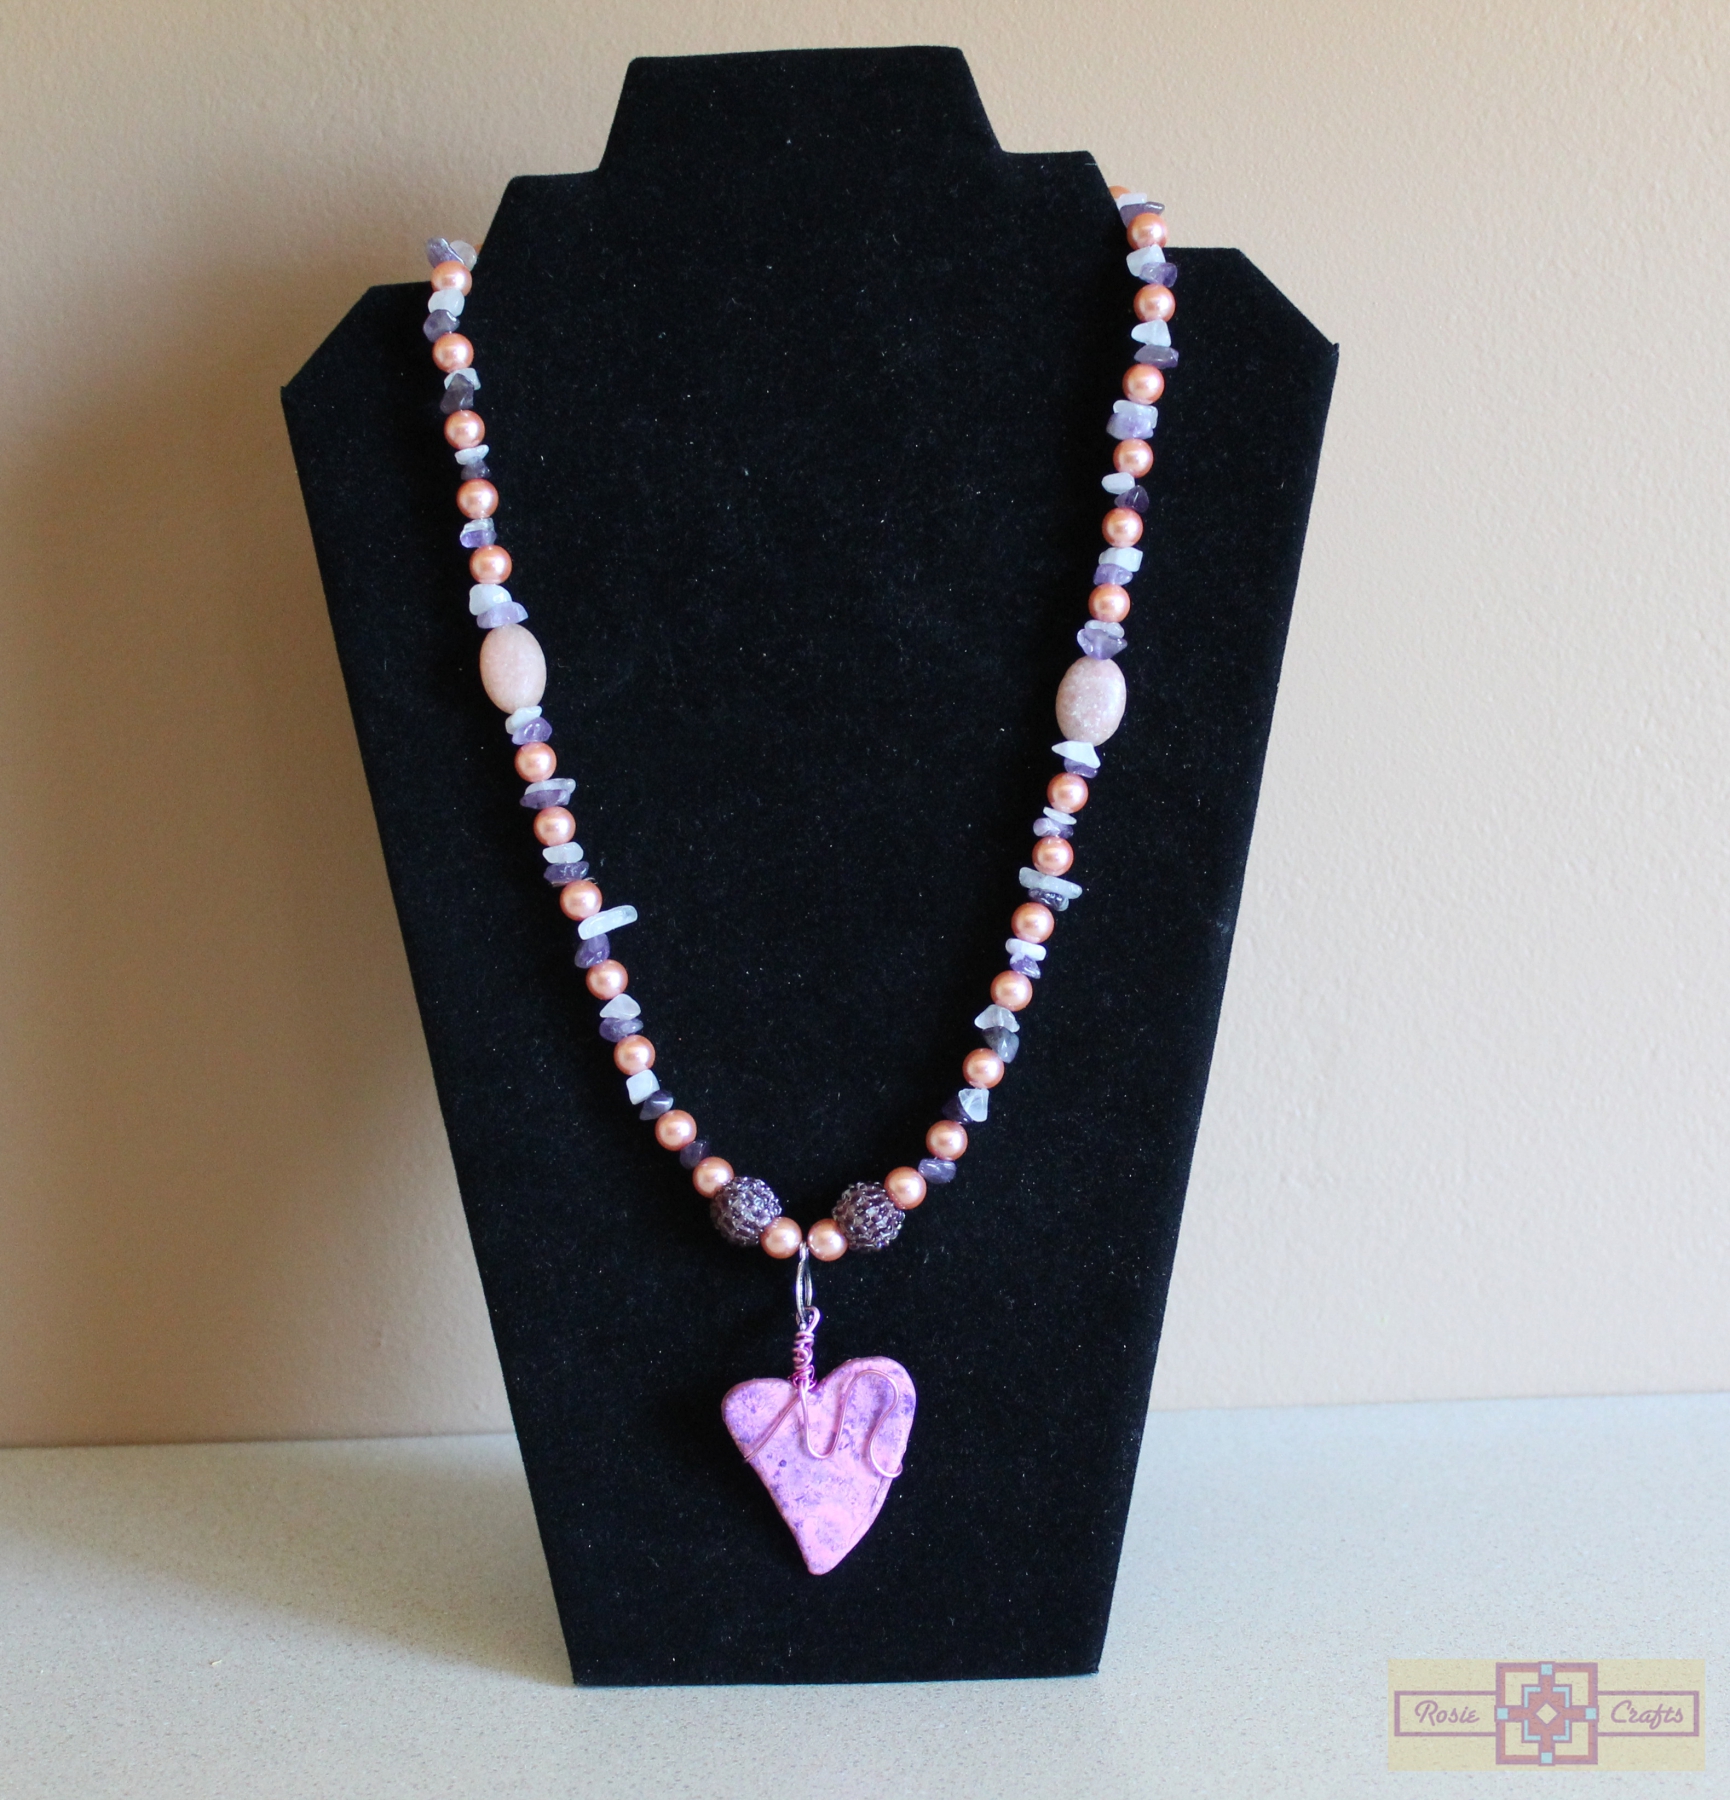 Rosie Crafts Artisan Valentine and Heart Jewelry